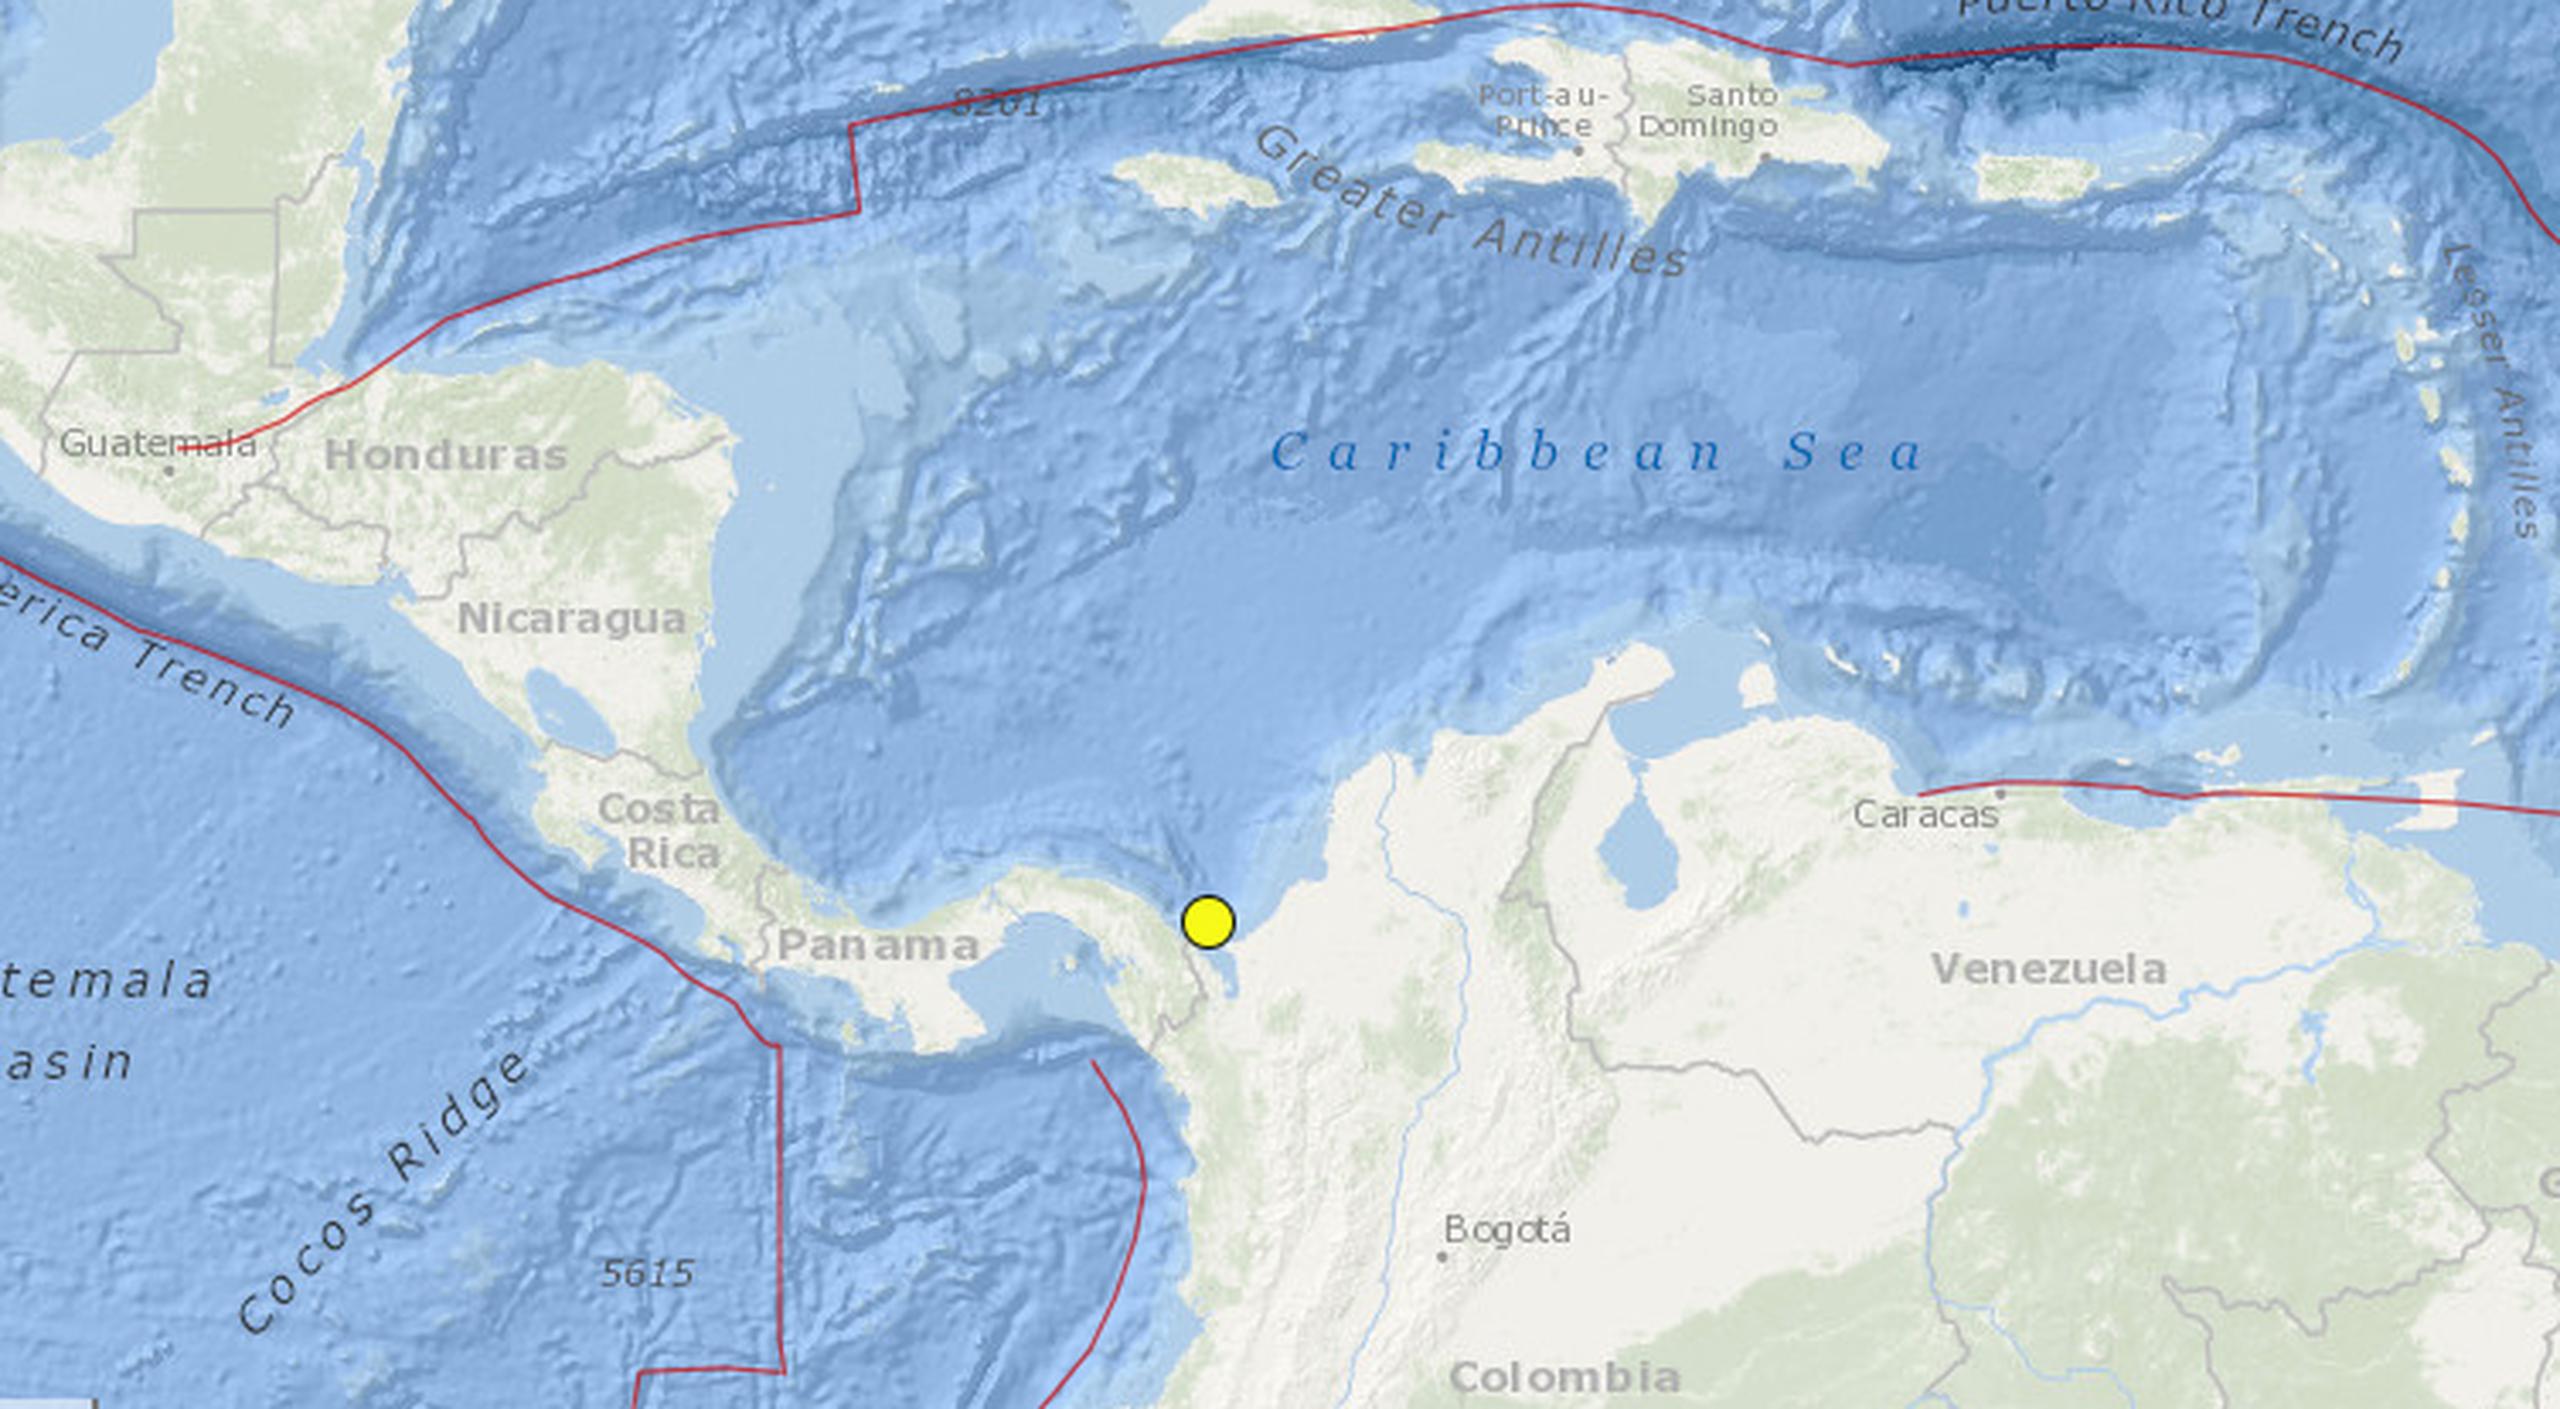 El epicentro se ubicó a unos 41 kilómetros (25 millas) al noreste de Puerto Obaldía, Panamá, con una profundidad de 10 kilómetros (6 millas).